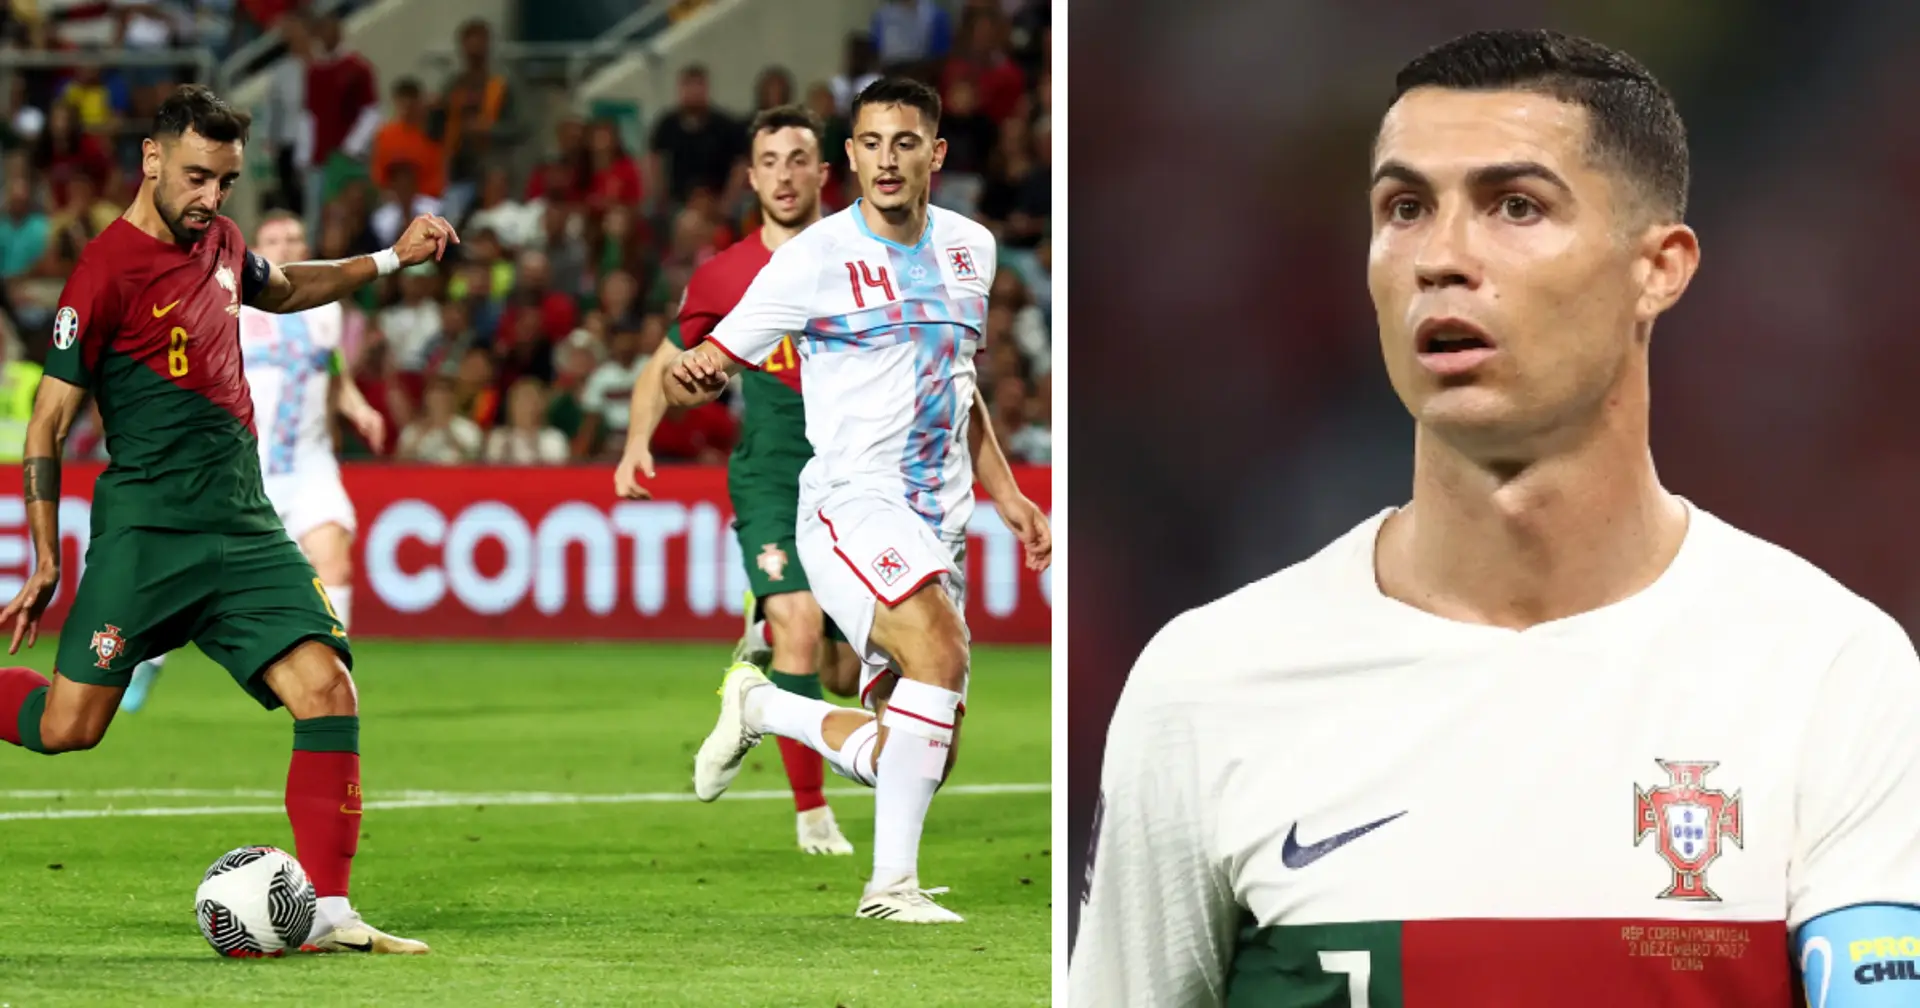 Danilo Pereira défend Ronaldo après que le Portugal ait marqué 9 buts sans lui - un joueur du PSG en a profité